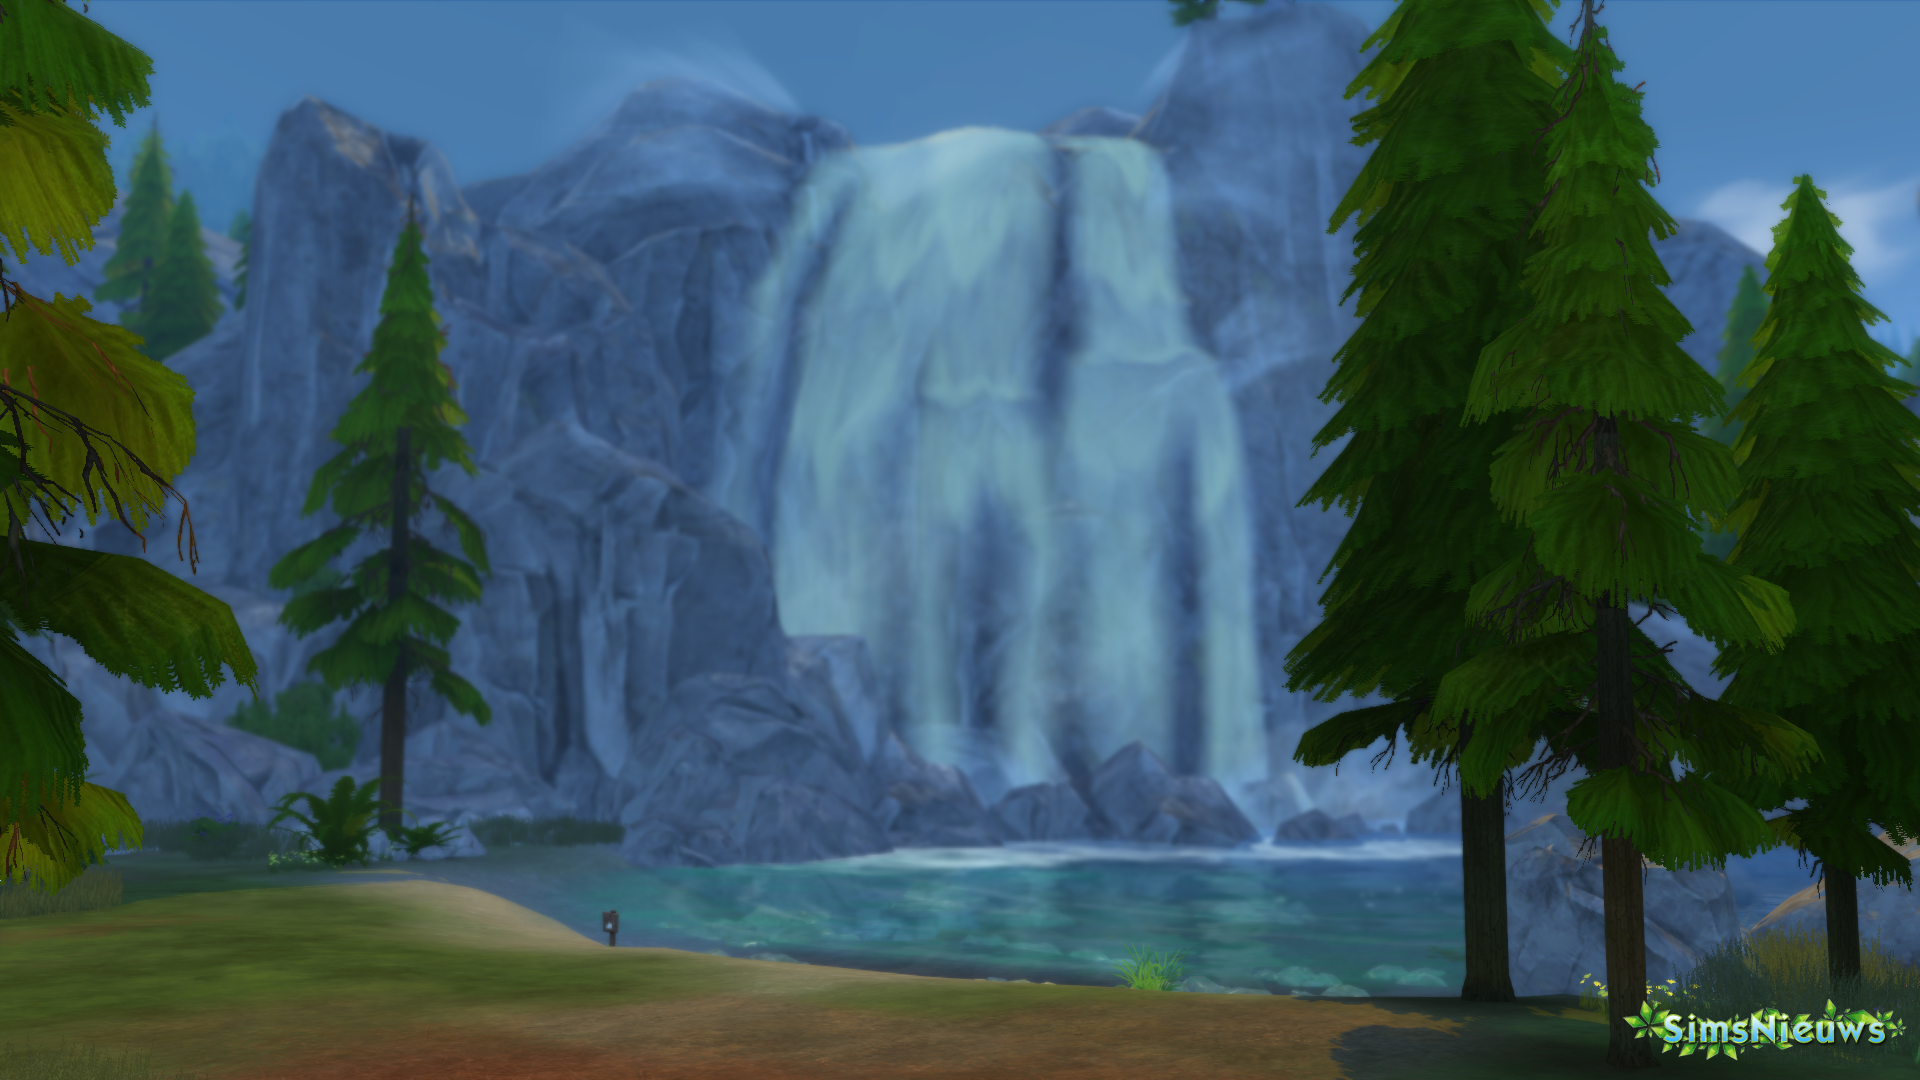 De Sims 4 In de Natuur